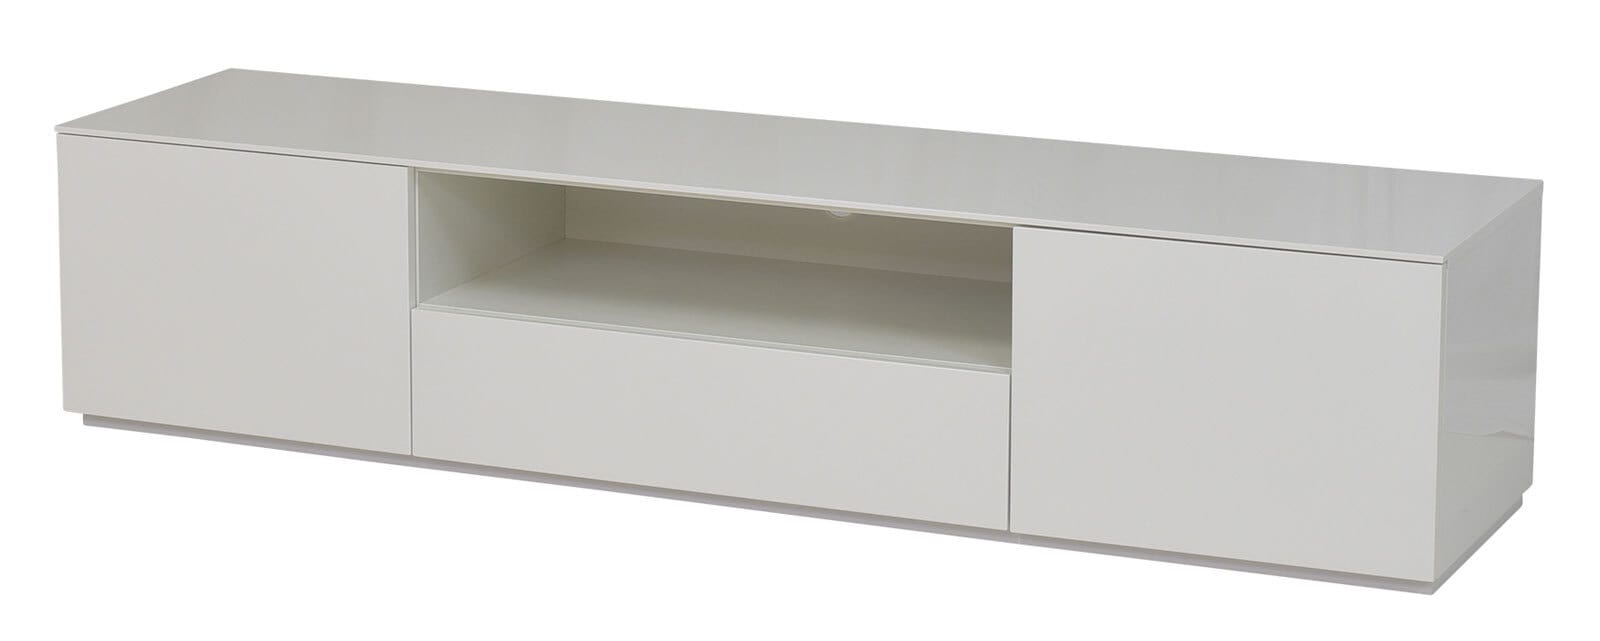 Lowboard MONIQUE 180 x 40 cm Hochglanz weiß